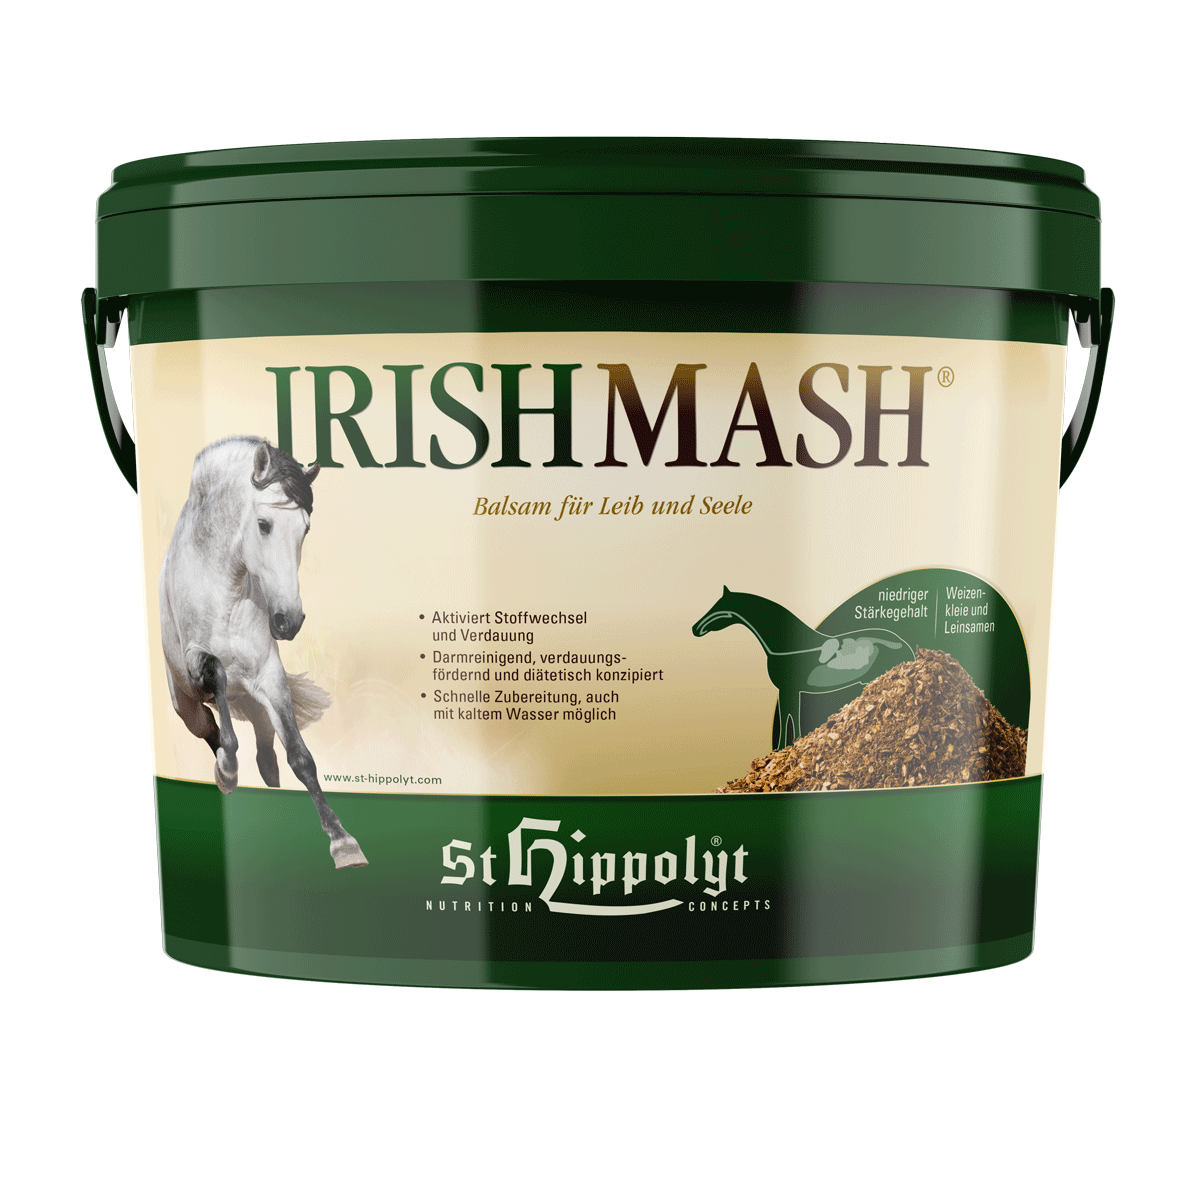 St.Hippolyt - Irish Mash® - Aktiviert Stoffwechsel und Verdauung der Pferde